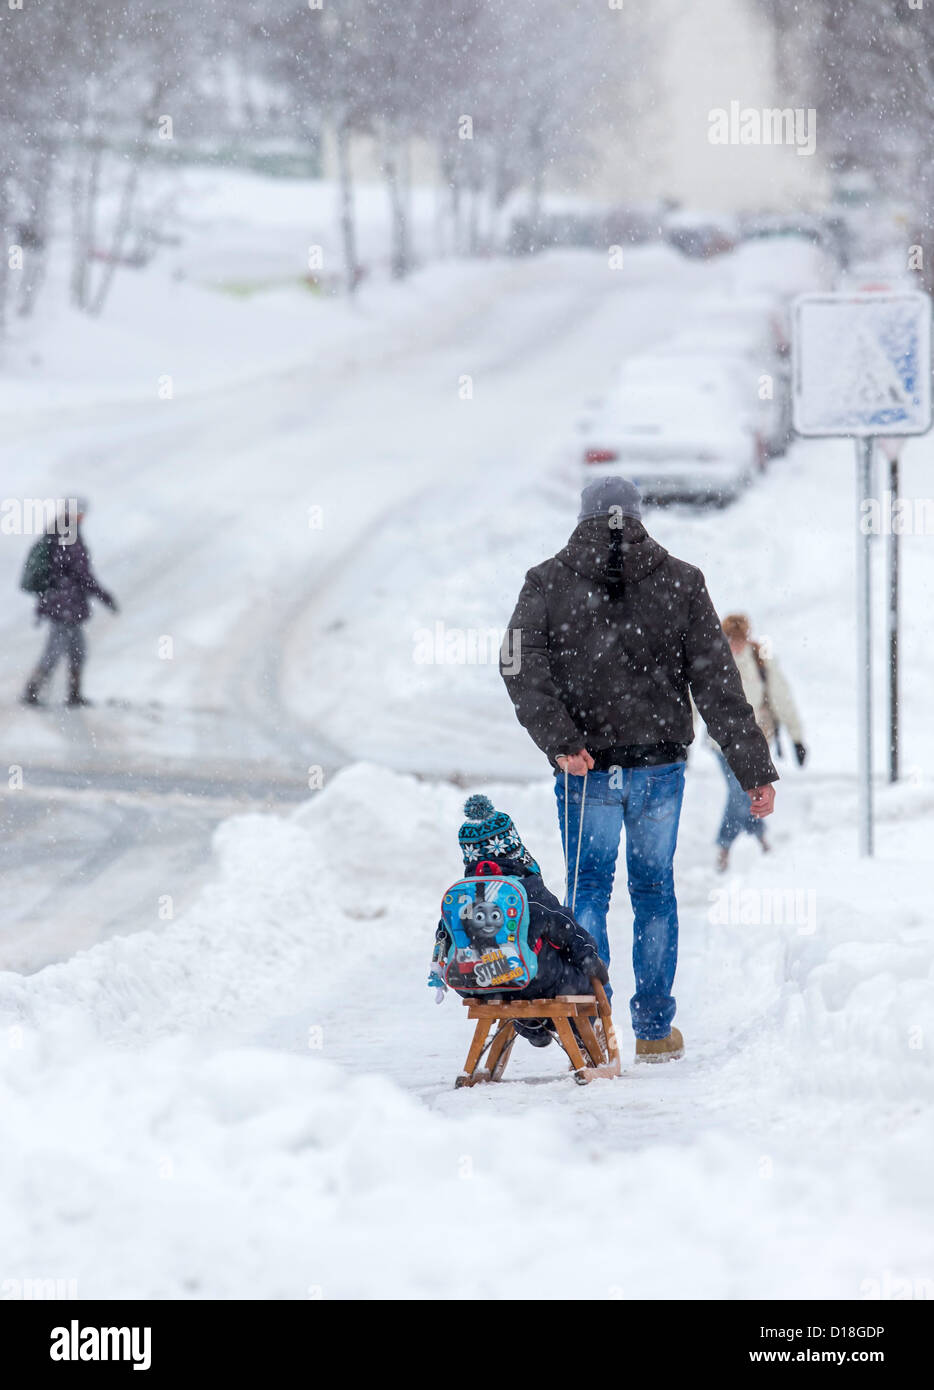 Vater zieht seinen Sohn auf einem Schlitten durch den Schnee in Ilmenau, Deutschland, 10. Dezember 2012. Starke Schneefälle verursachen weitere Probleme in der Arrea. Foto: Michael Reichel Stockfoto